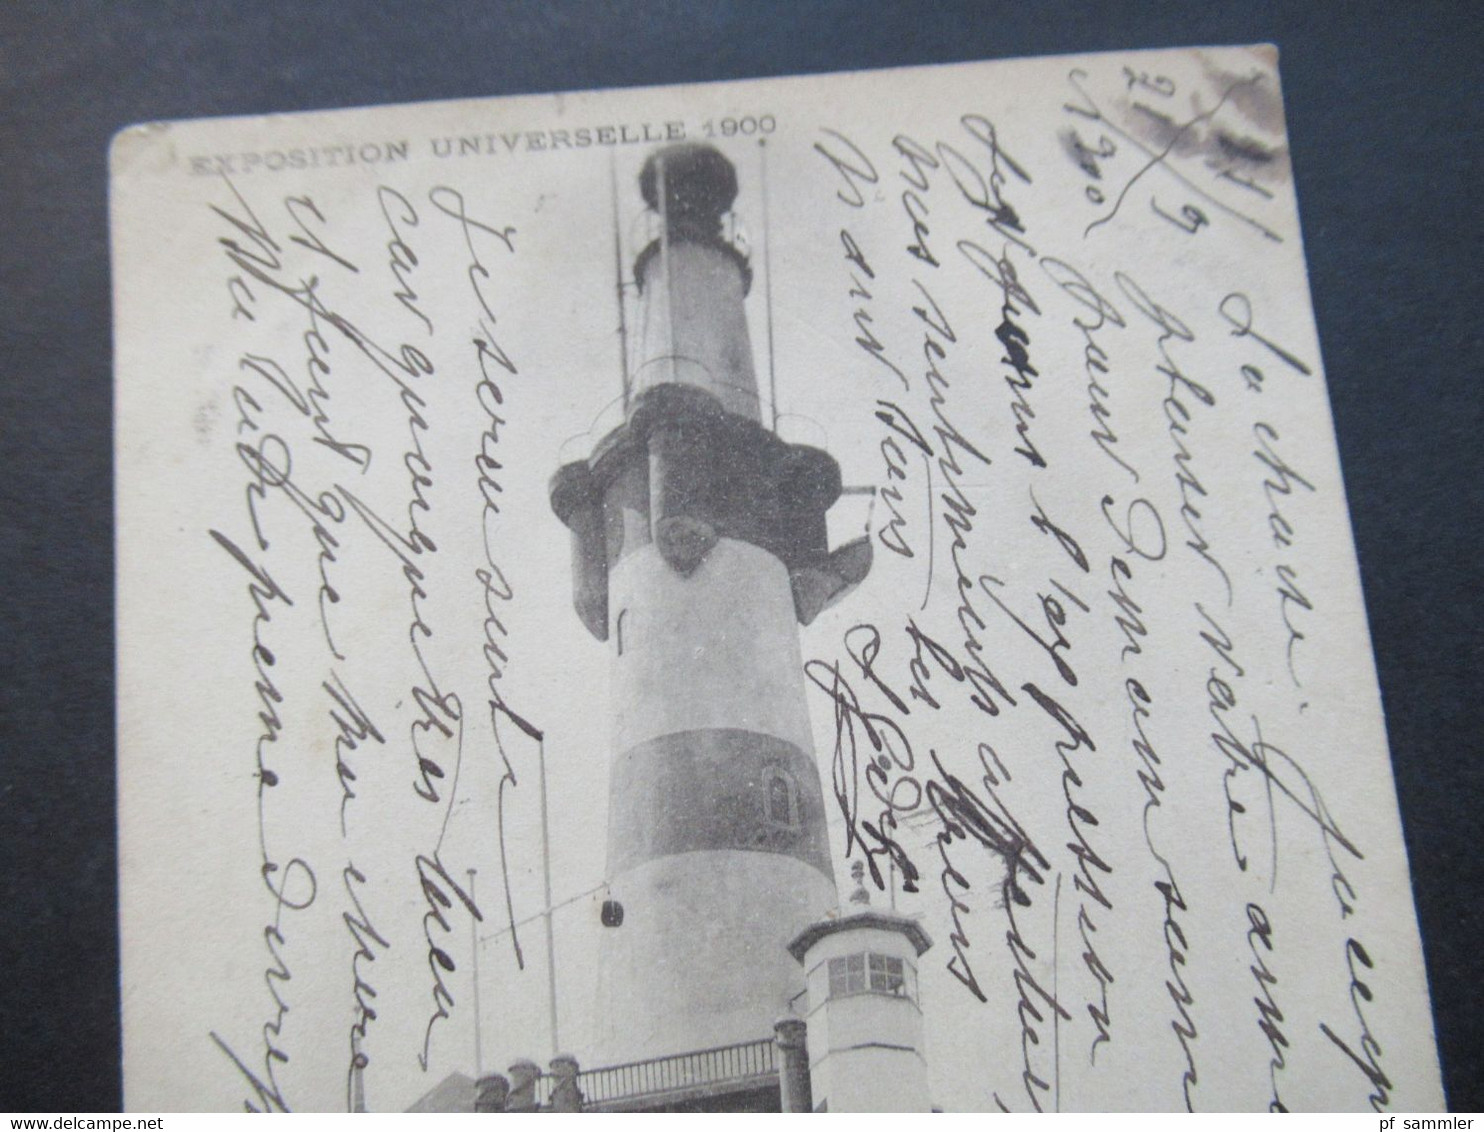 Frankreich 1900 Weltausstellung Exposition Universelle 1900 Marine Marchande Allemande Leuchtturm / Schifffahrt - Exposiciones